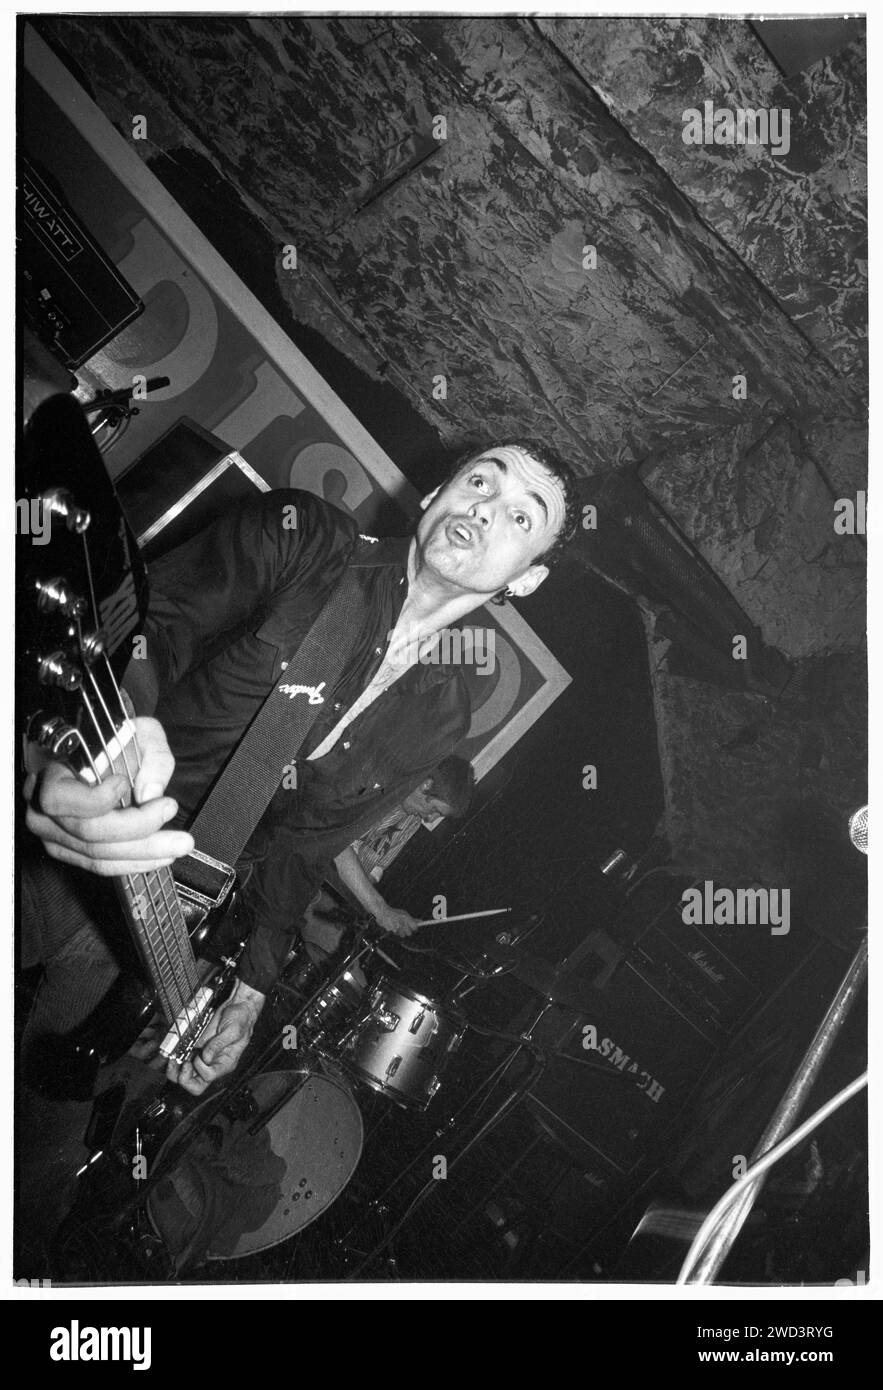 Salvatore Alessi (bekannt als Salv) von der Punkband S*M*A*S*H (SMASH) spielte am 21. März 1994 live in den legendären TJ’s in Newport, Wales, Großbritannien. Foto: Rob Watkins. INFO: SMASH, eine britische Punkband aus den 90ern, hat sich dem DIY-Ethos angeschlossen. Ihr energiegeladener Sound, angetrieben von politisch aufgeladenen Texten, fand eine Anhängerschaft. Hymnen wie „I Want to Kill Someone“ und „Shame“ fesselten den rebellischen Geist der Punkszene während ihrer aktiven Jahre. Stockfoto